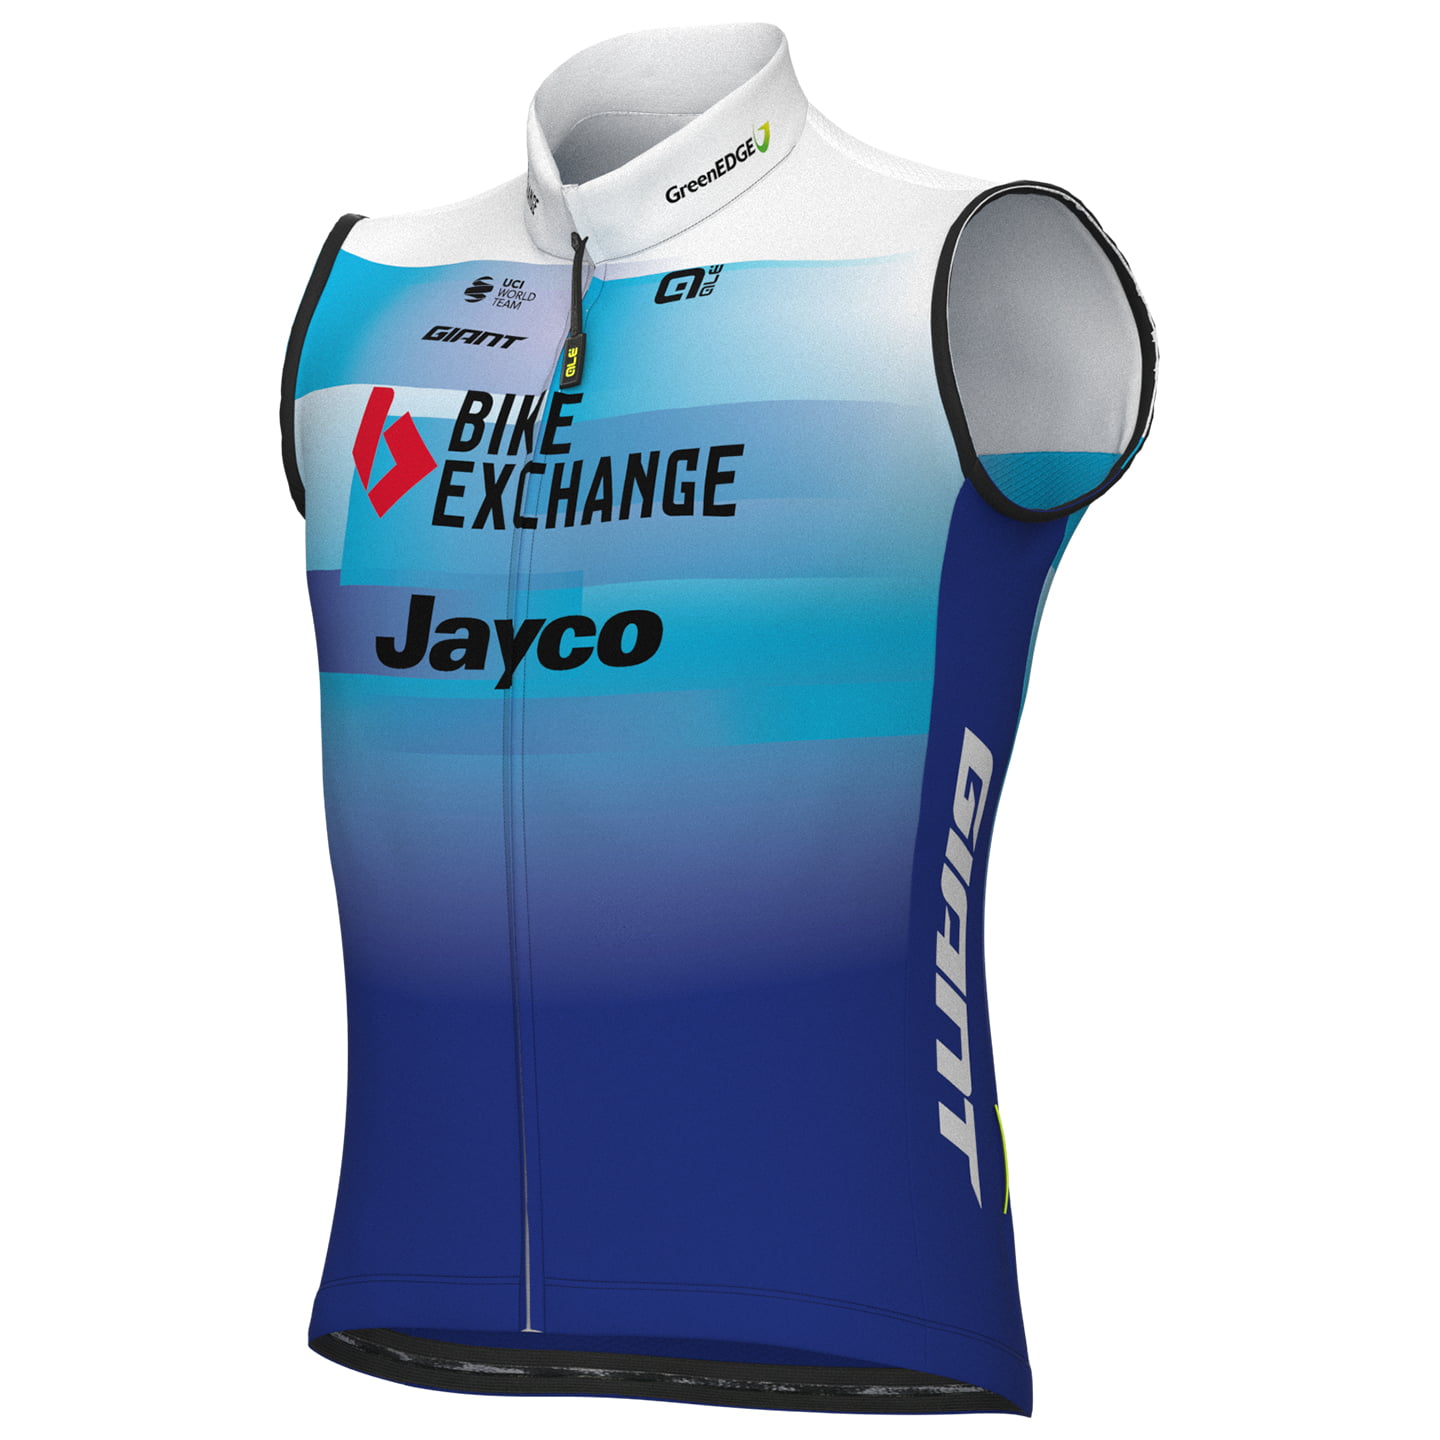 TEAM BIKEEXCHANGE-JAYCO 2022 Wind Vest, for men, size XL, Cycling vest, Bike gear